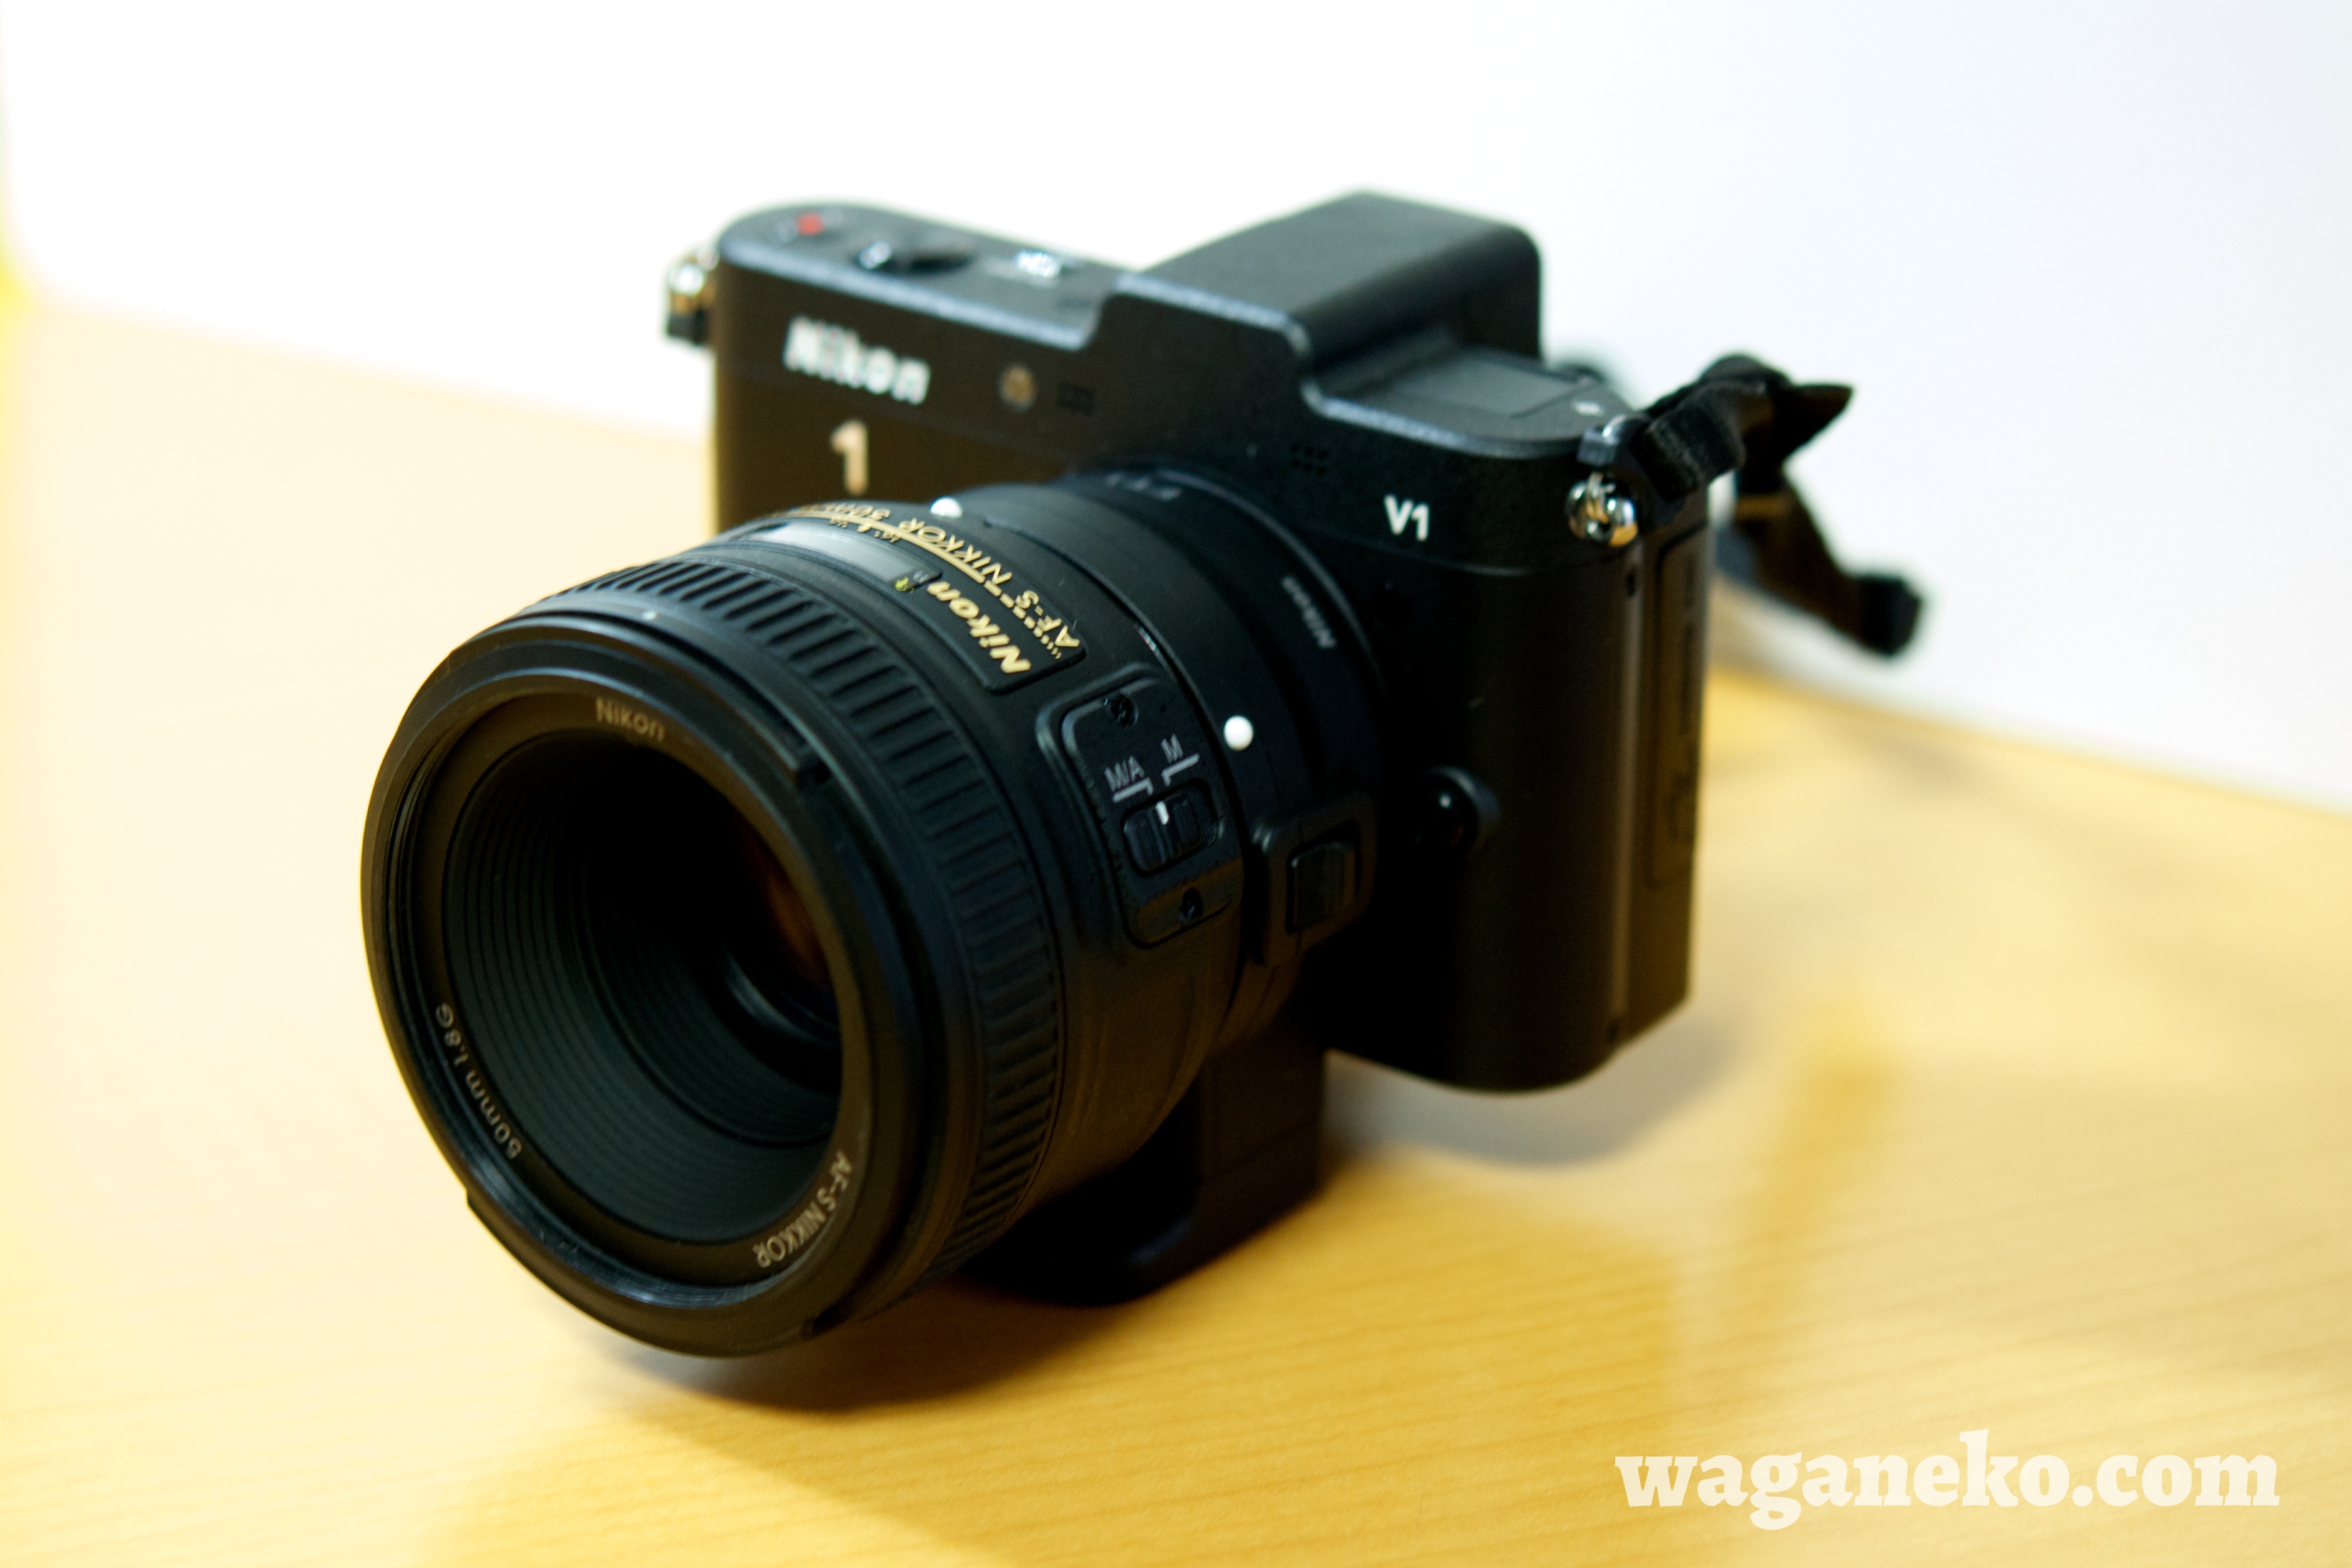 AF-S NIKKOR 50mm f/1.8G 購入! – waganeko.com